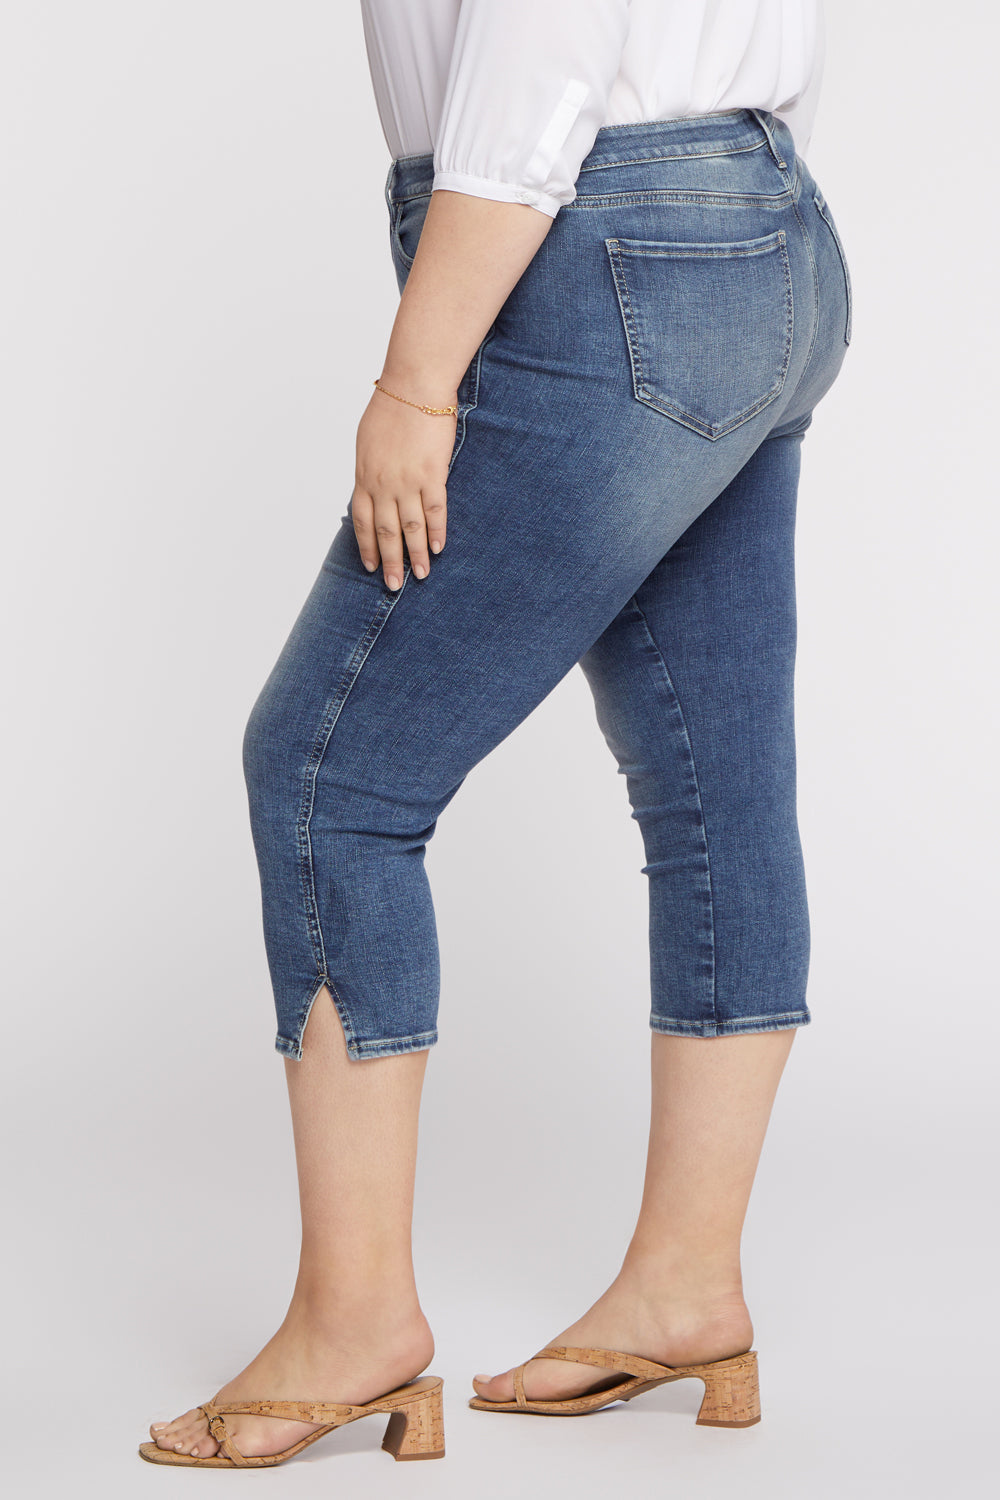 NYDJ Chloe Capri Jeans In Plus Size With Side Slits - Loire